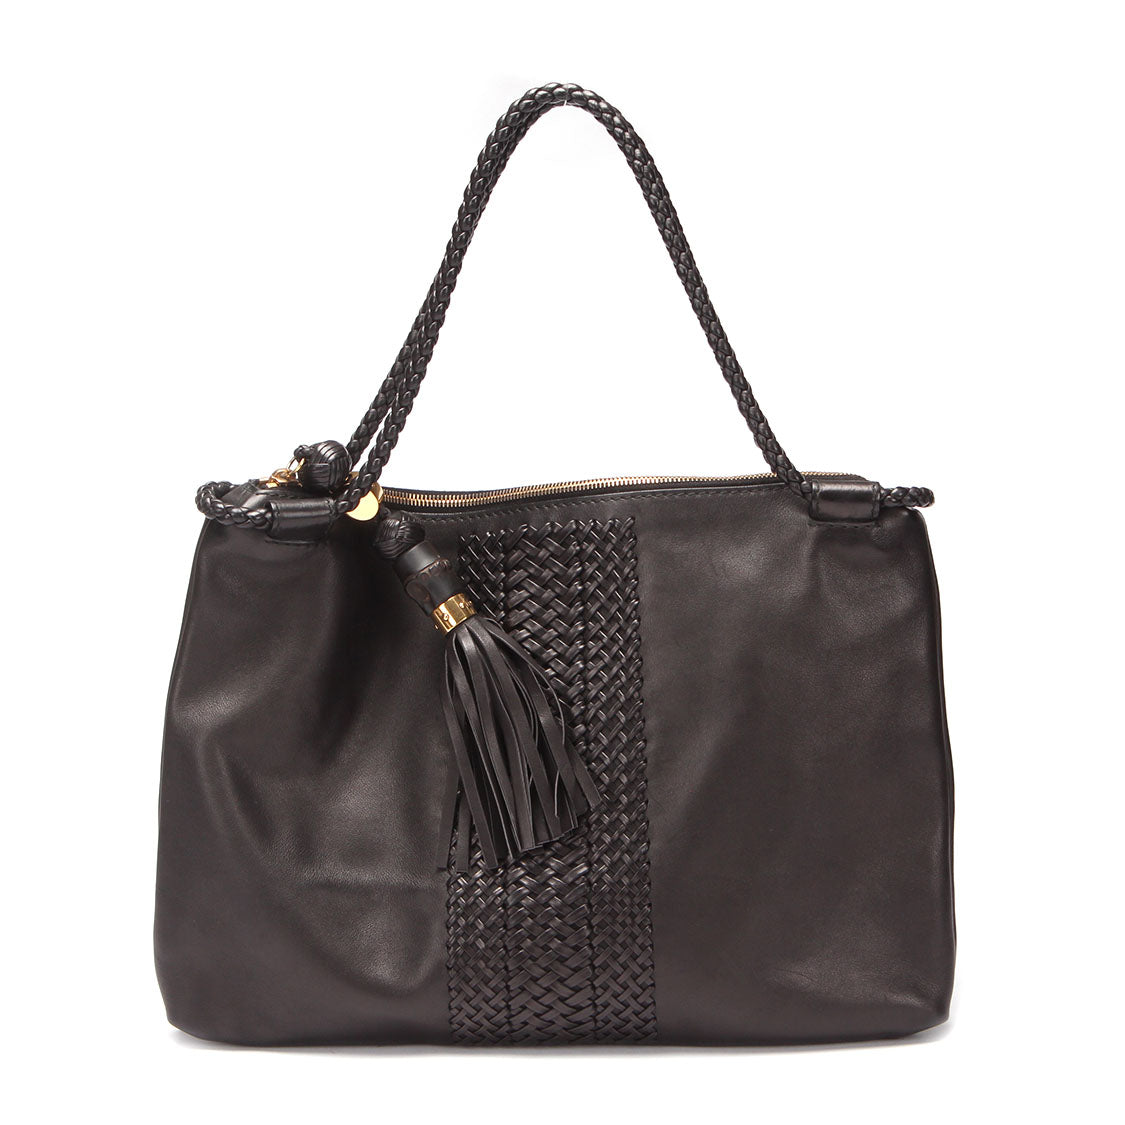 Gucci Leather Medium Handmade Shoulder Bag Leather Shoulder Bag 263952 in Good condition